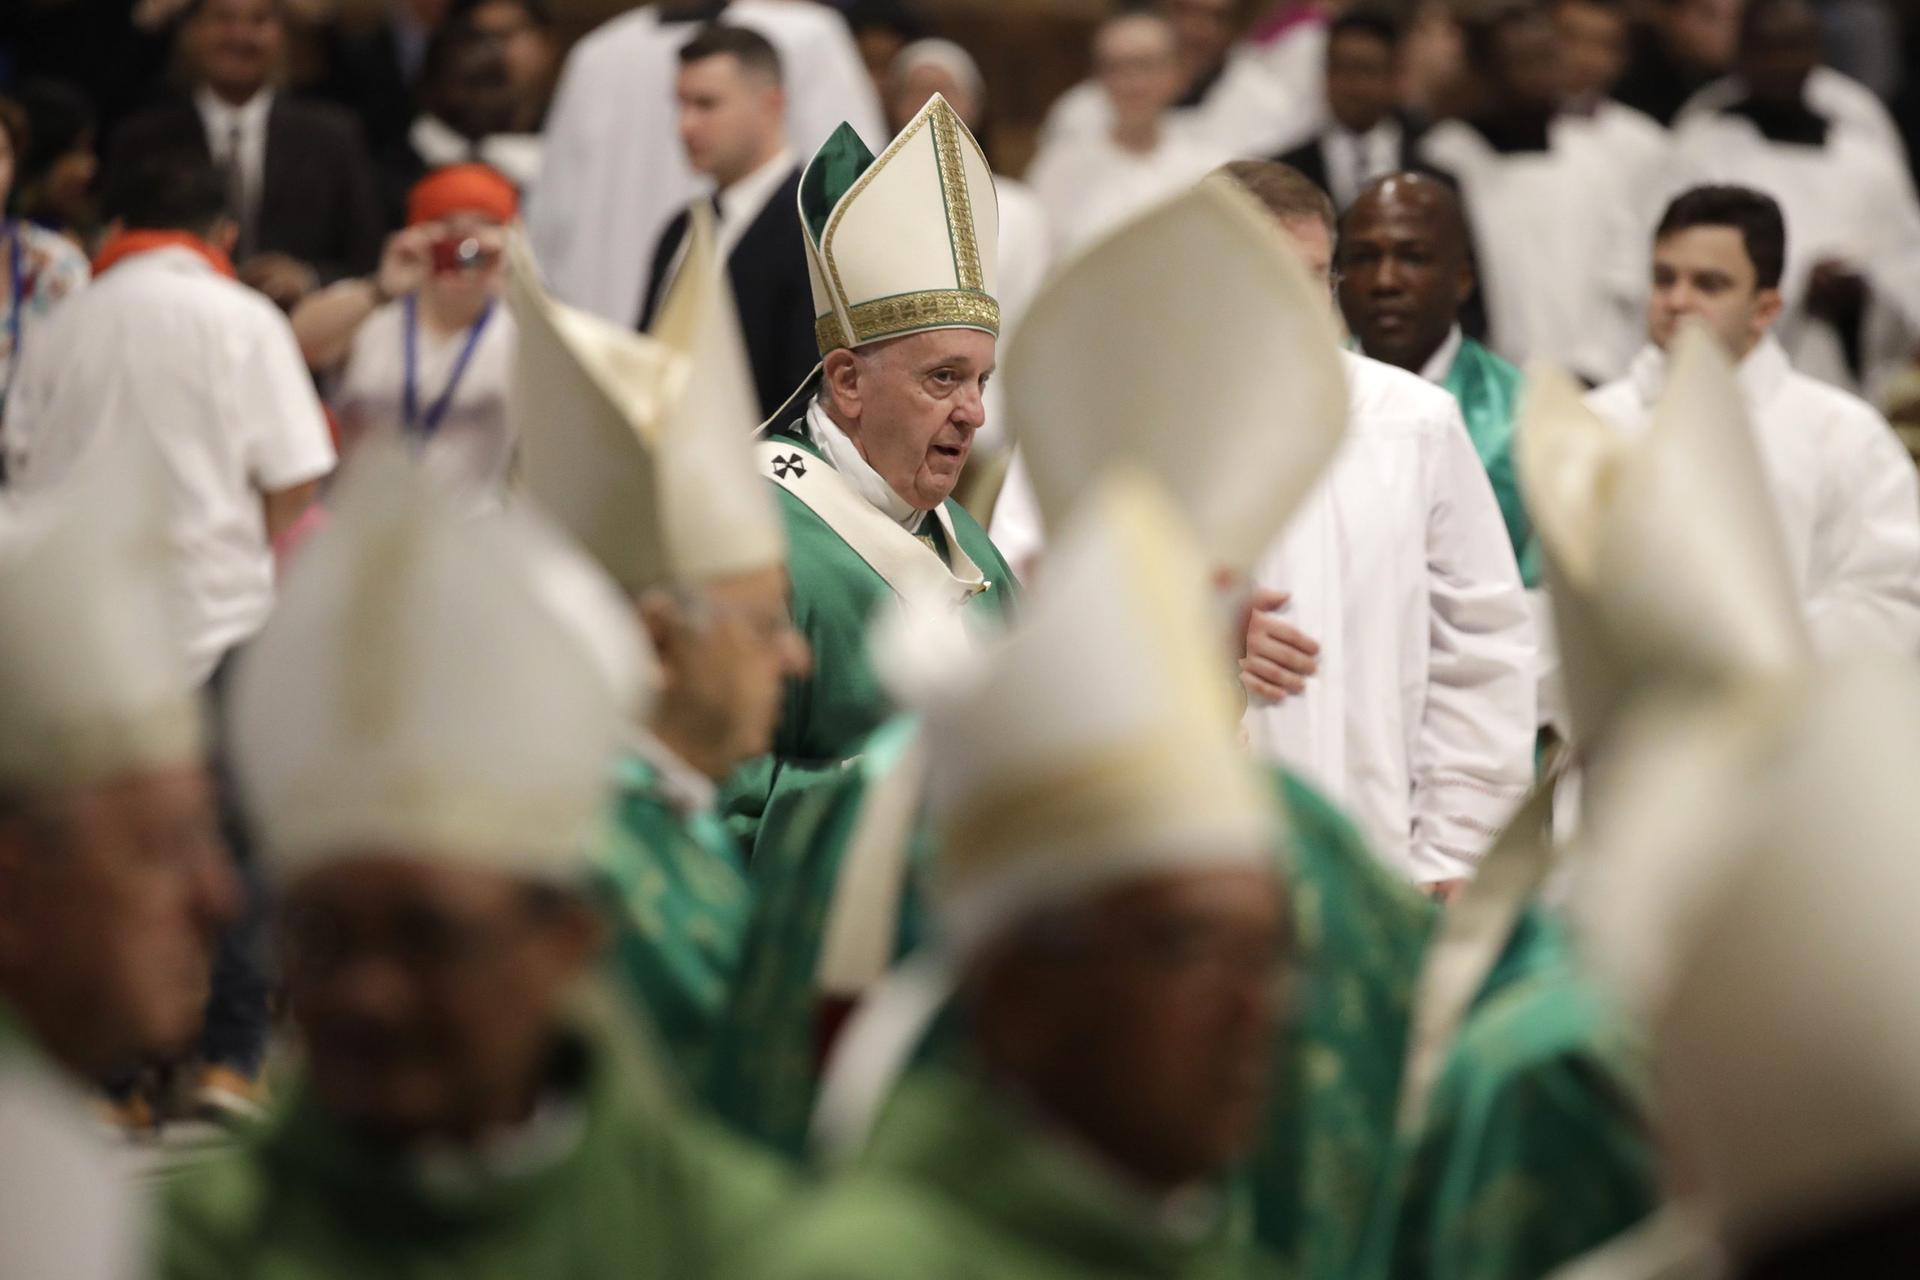 Global debate gets underway over married Catholic priests